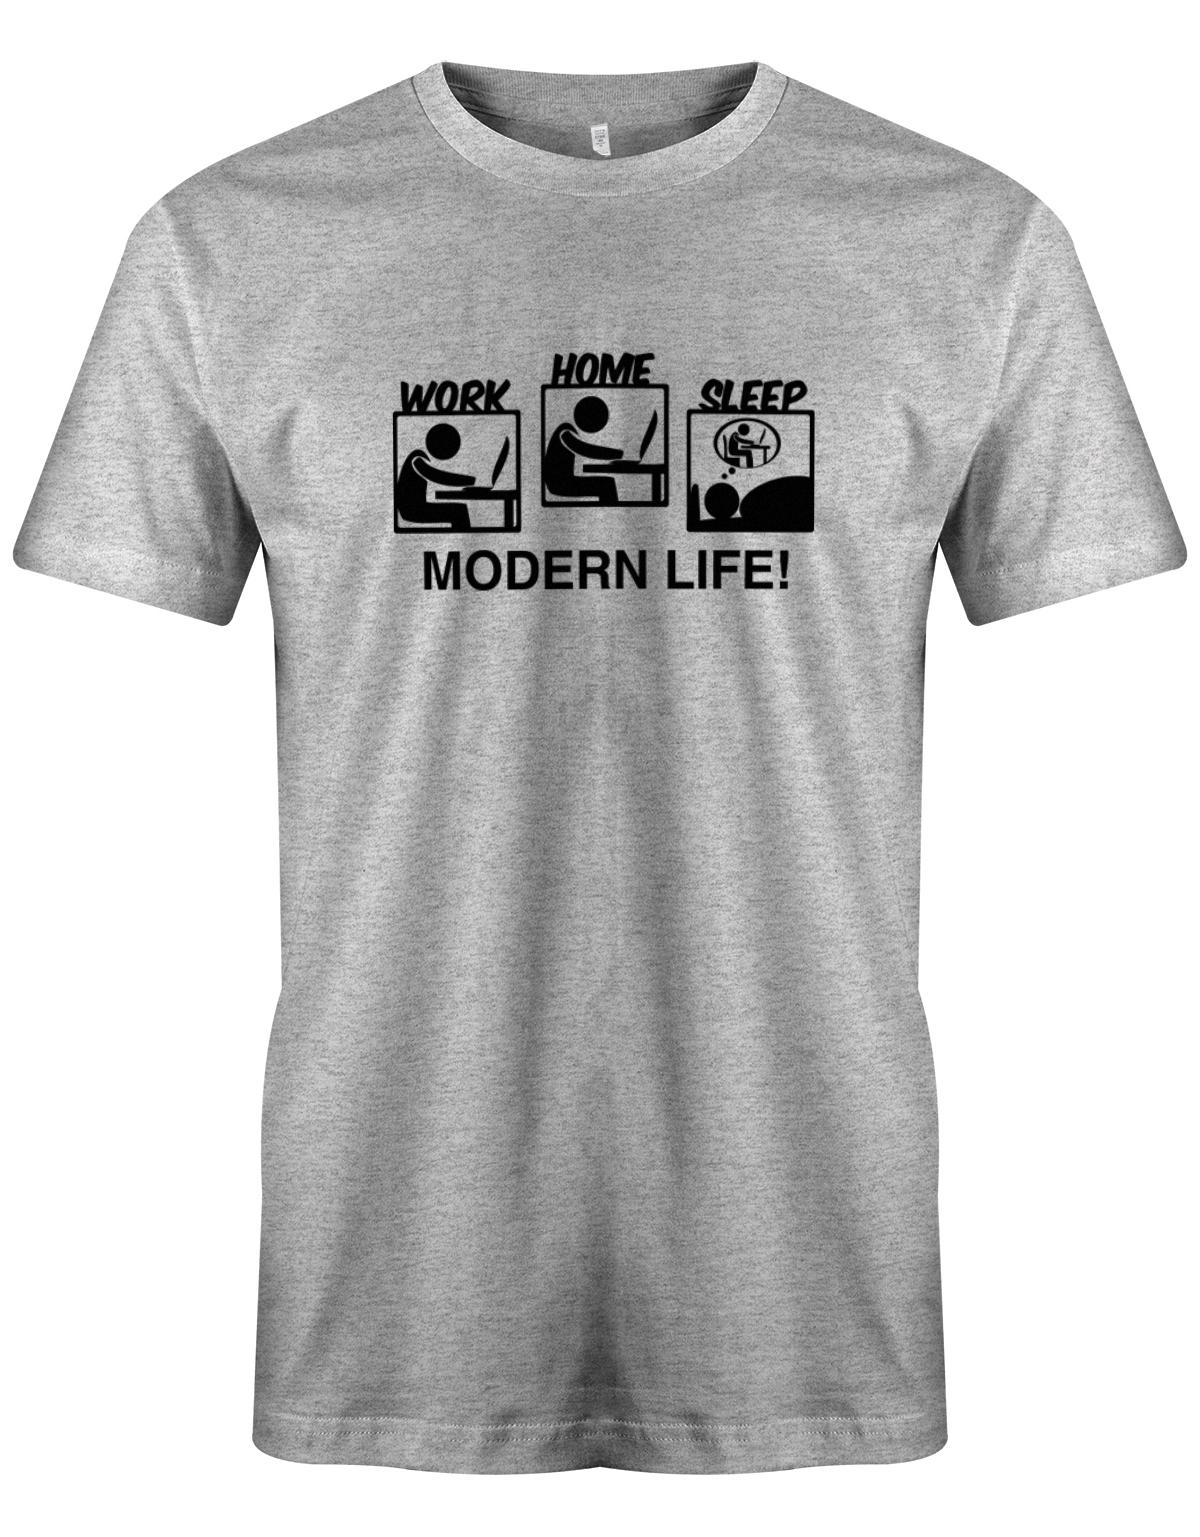 Modern-Life-Work-Home-Sleep-Herren-Gamer-Shirt-Grau